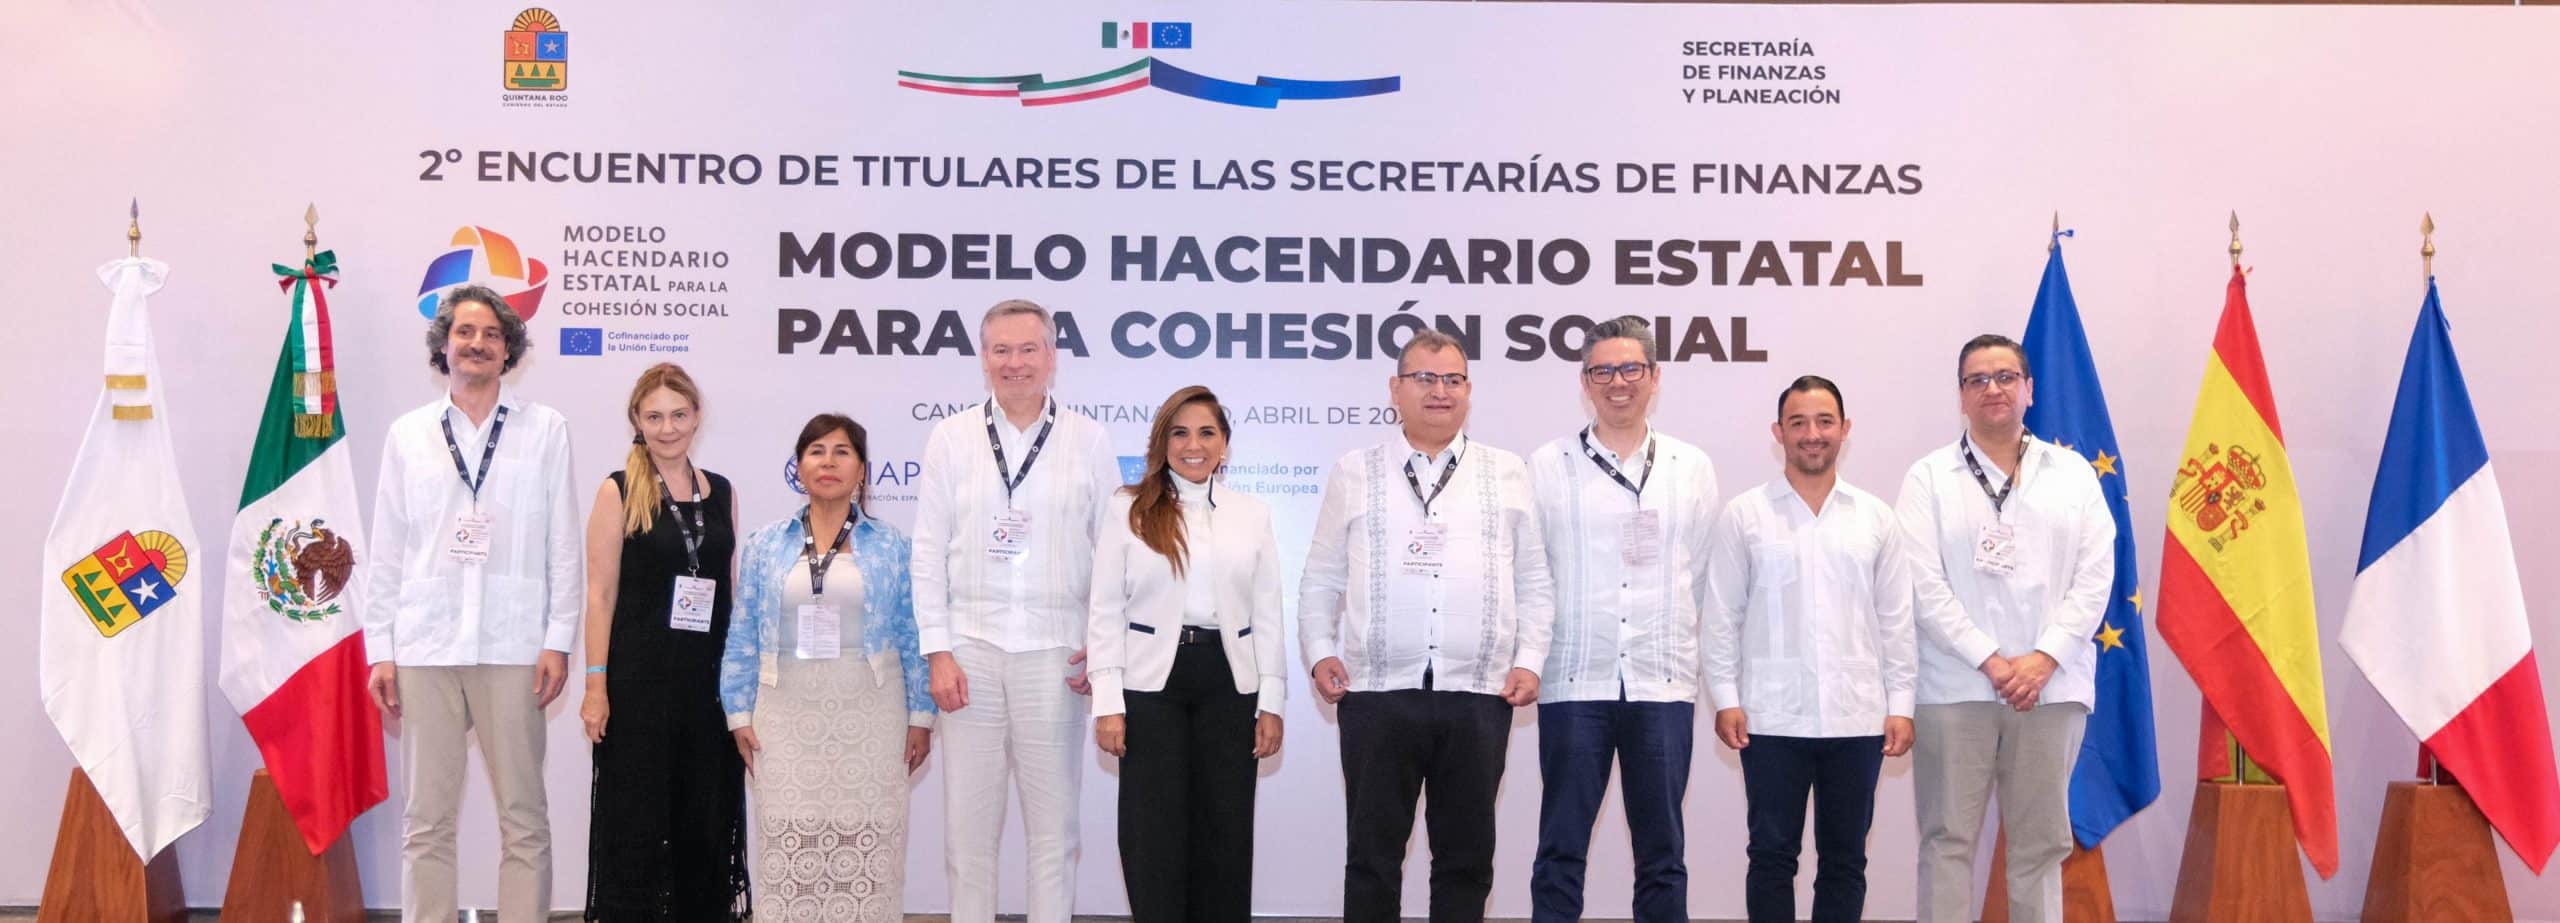 Se realiza el 2º Encuentro de Titulares del Modelo Hacendario Estatal para la Cohesión Social en Cancún